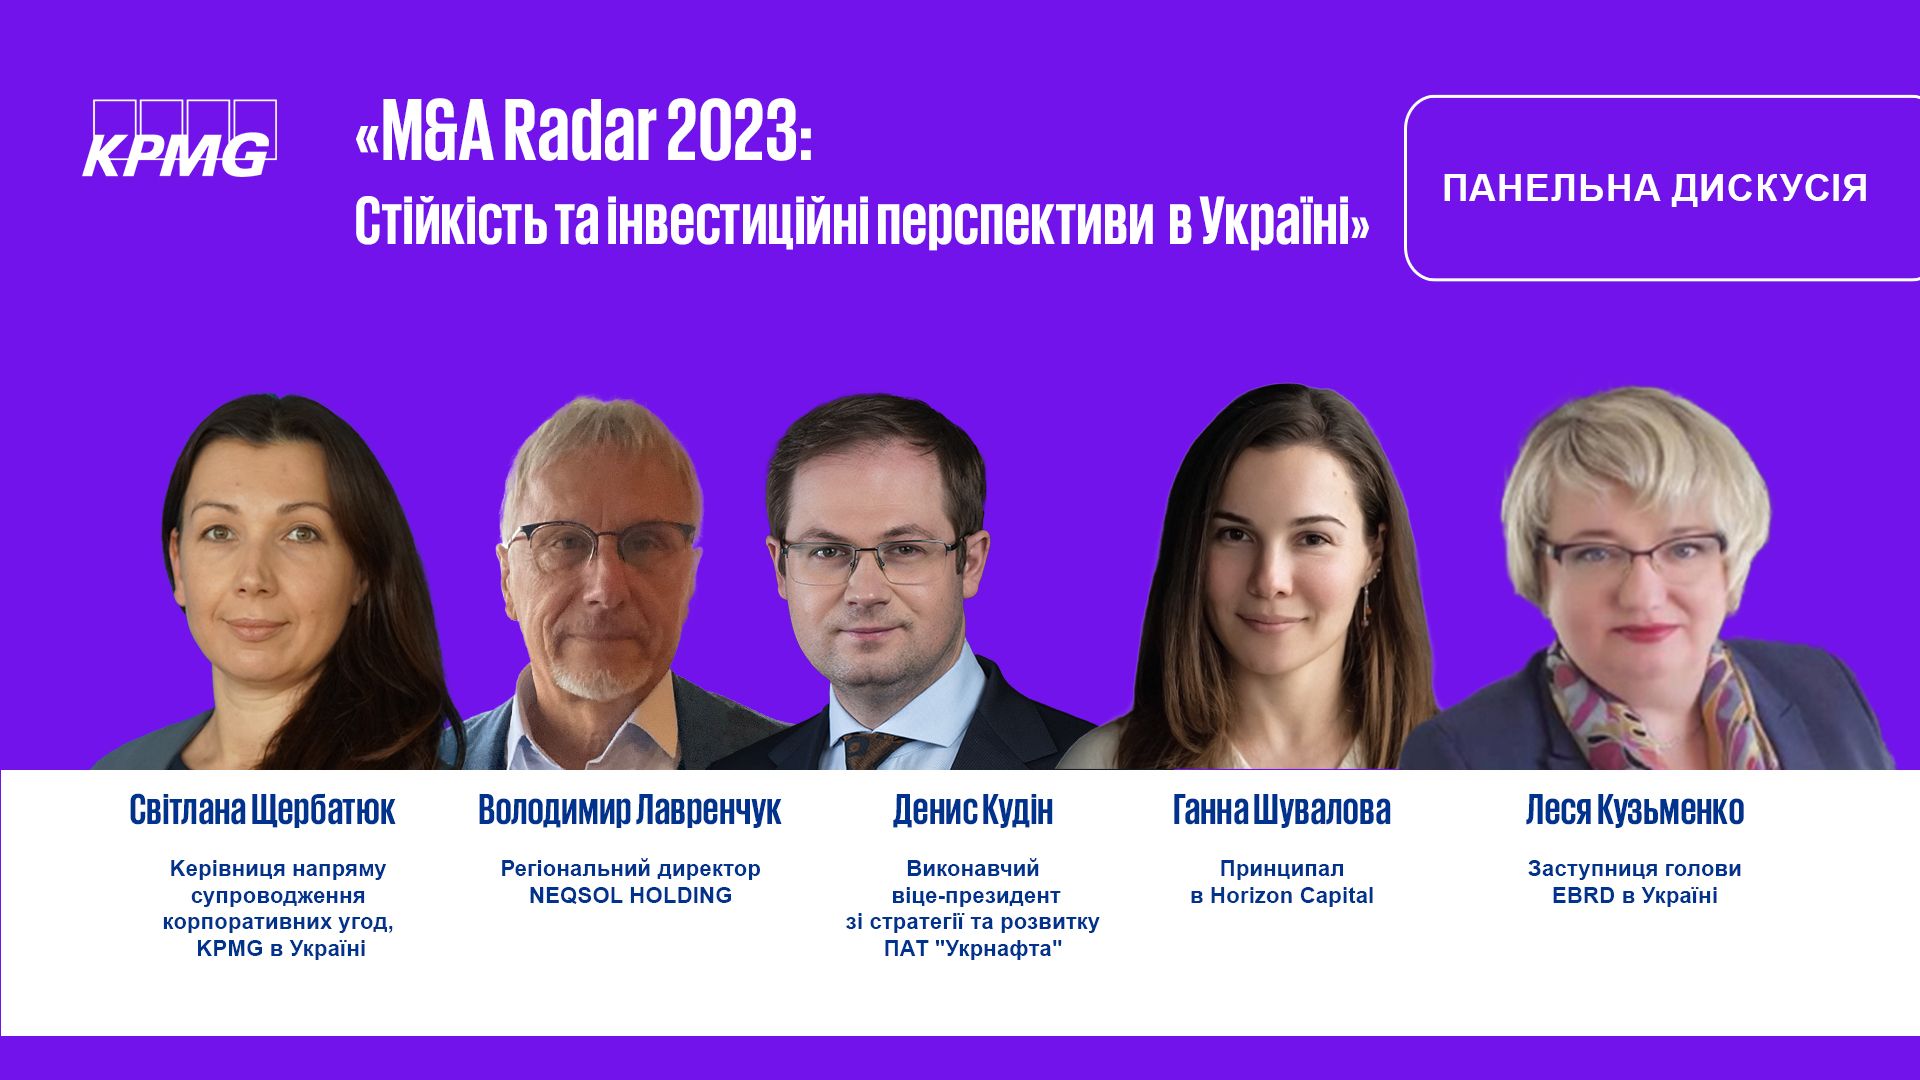 Панельна дискусія «M&A Radar 2023: Стійкість та інвестиційні перспективи в Україні»